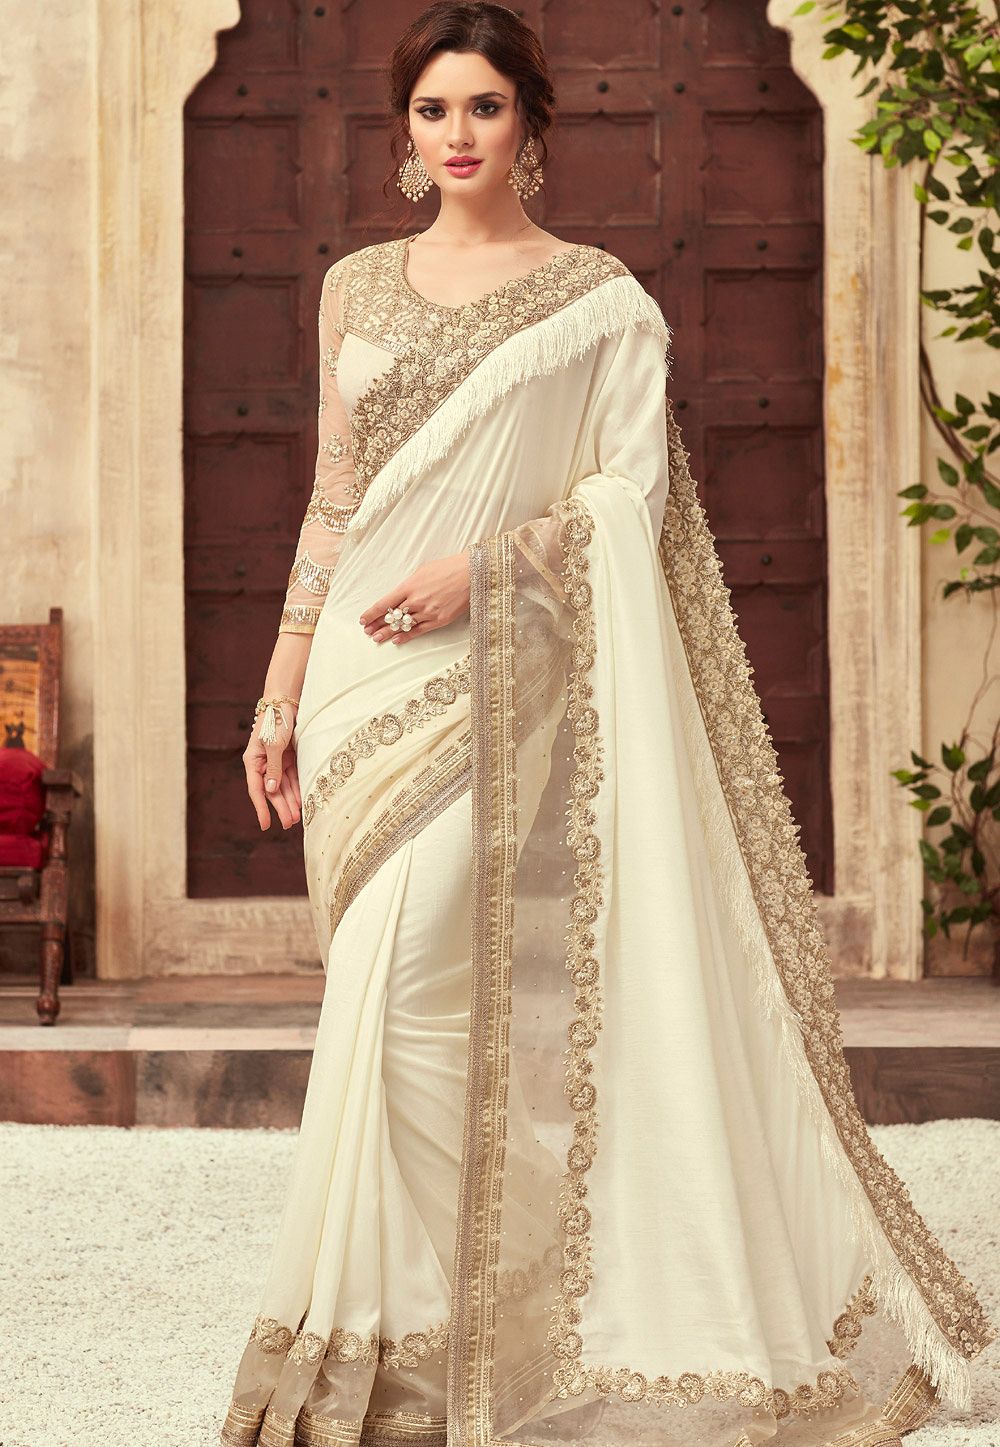 Свадебное платье индия